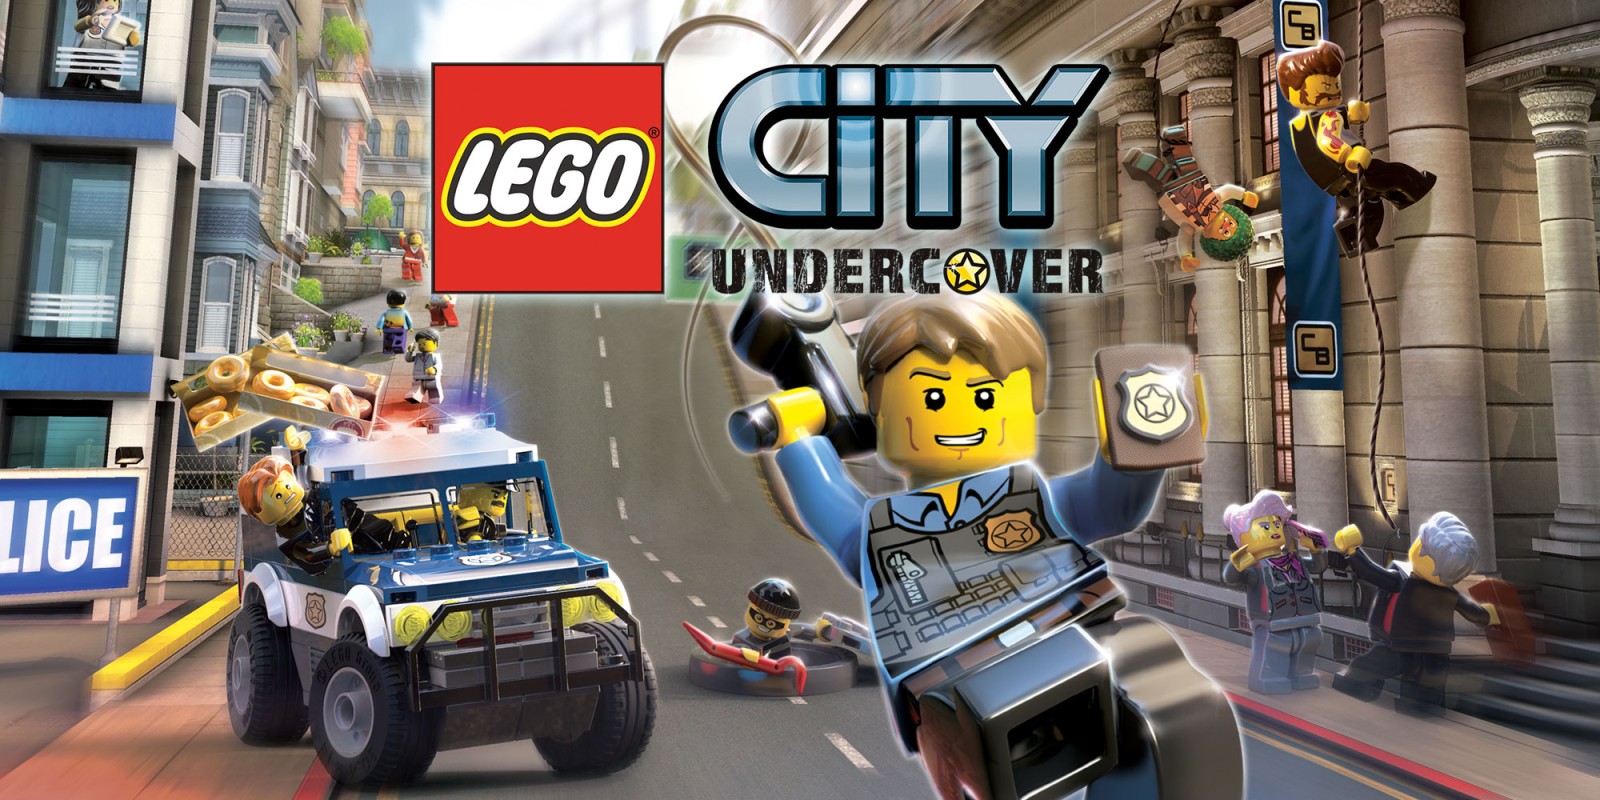 Asombro Café hospital LEGO City Undercover | Juegos de Wii U | Juegos | Nintendo